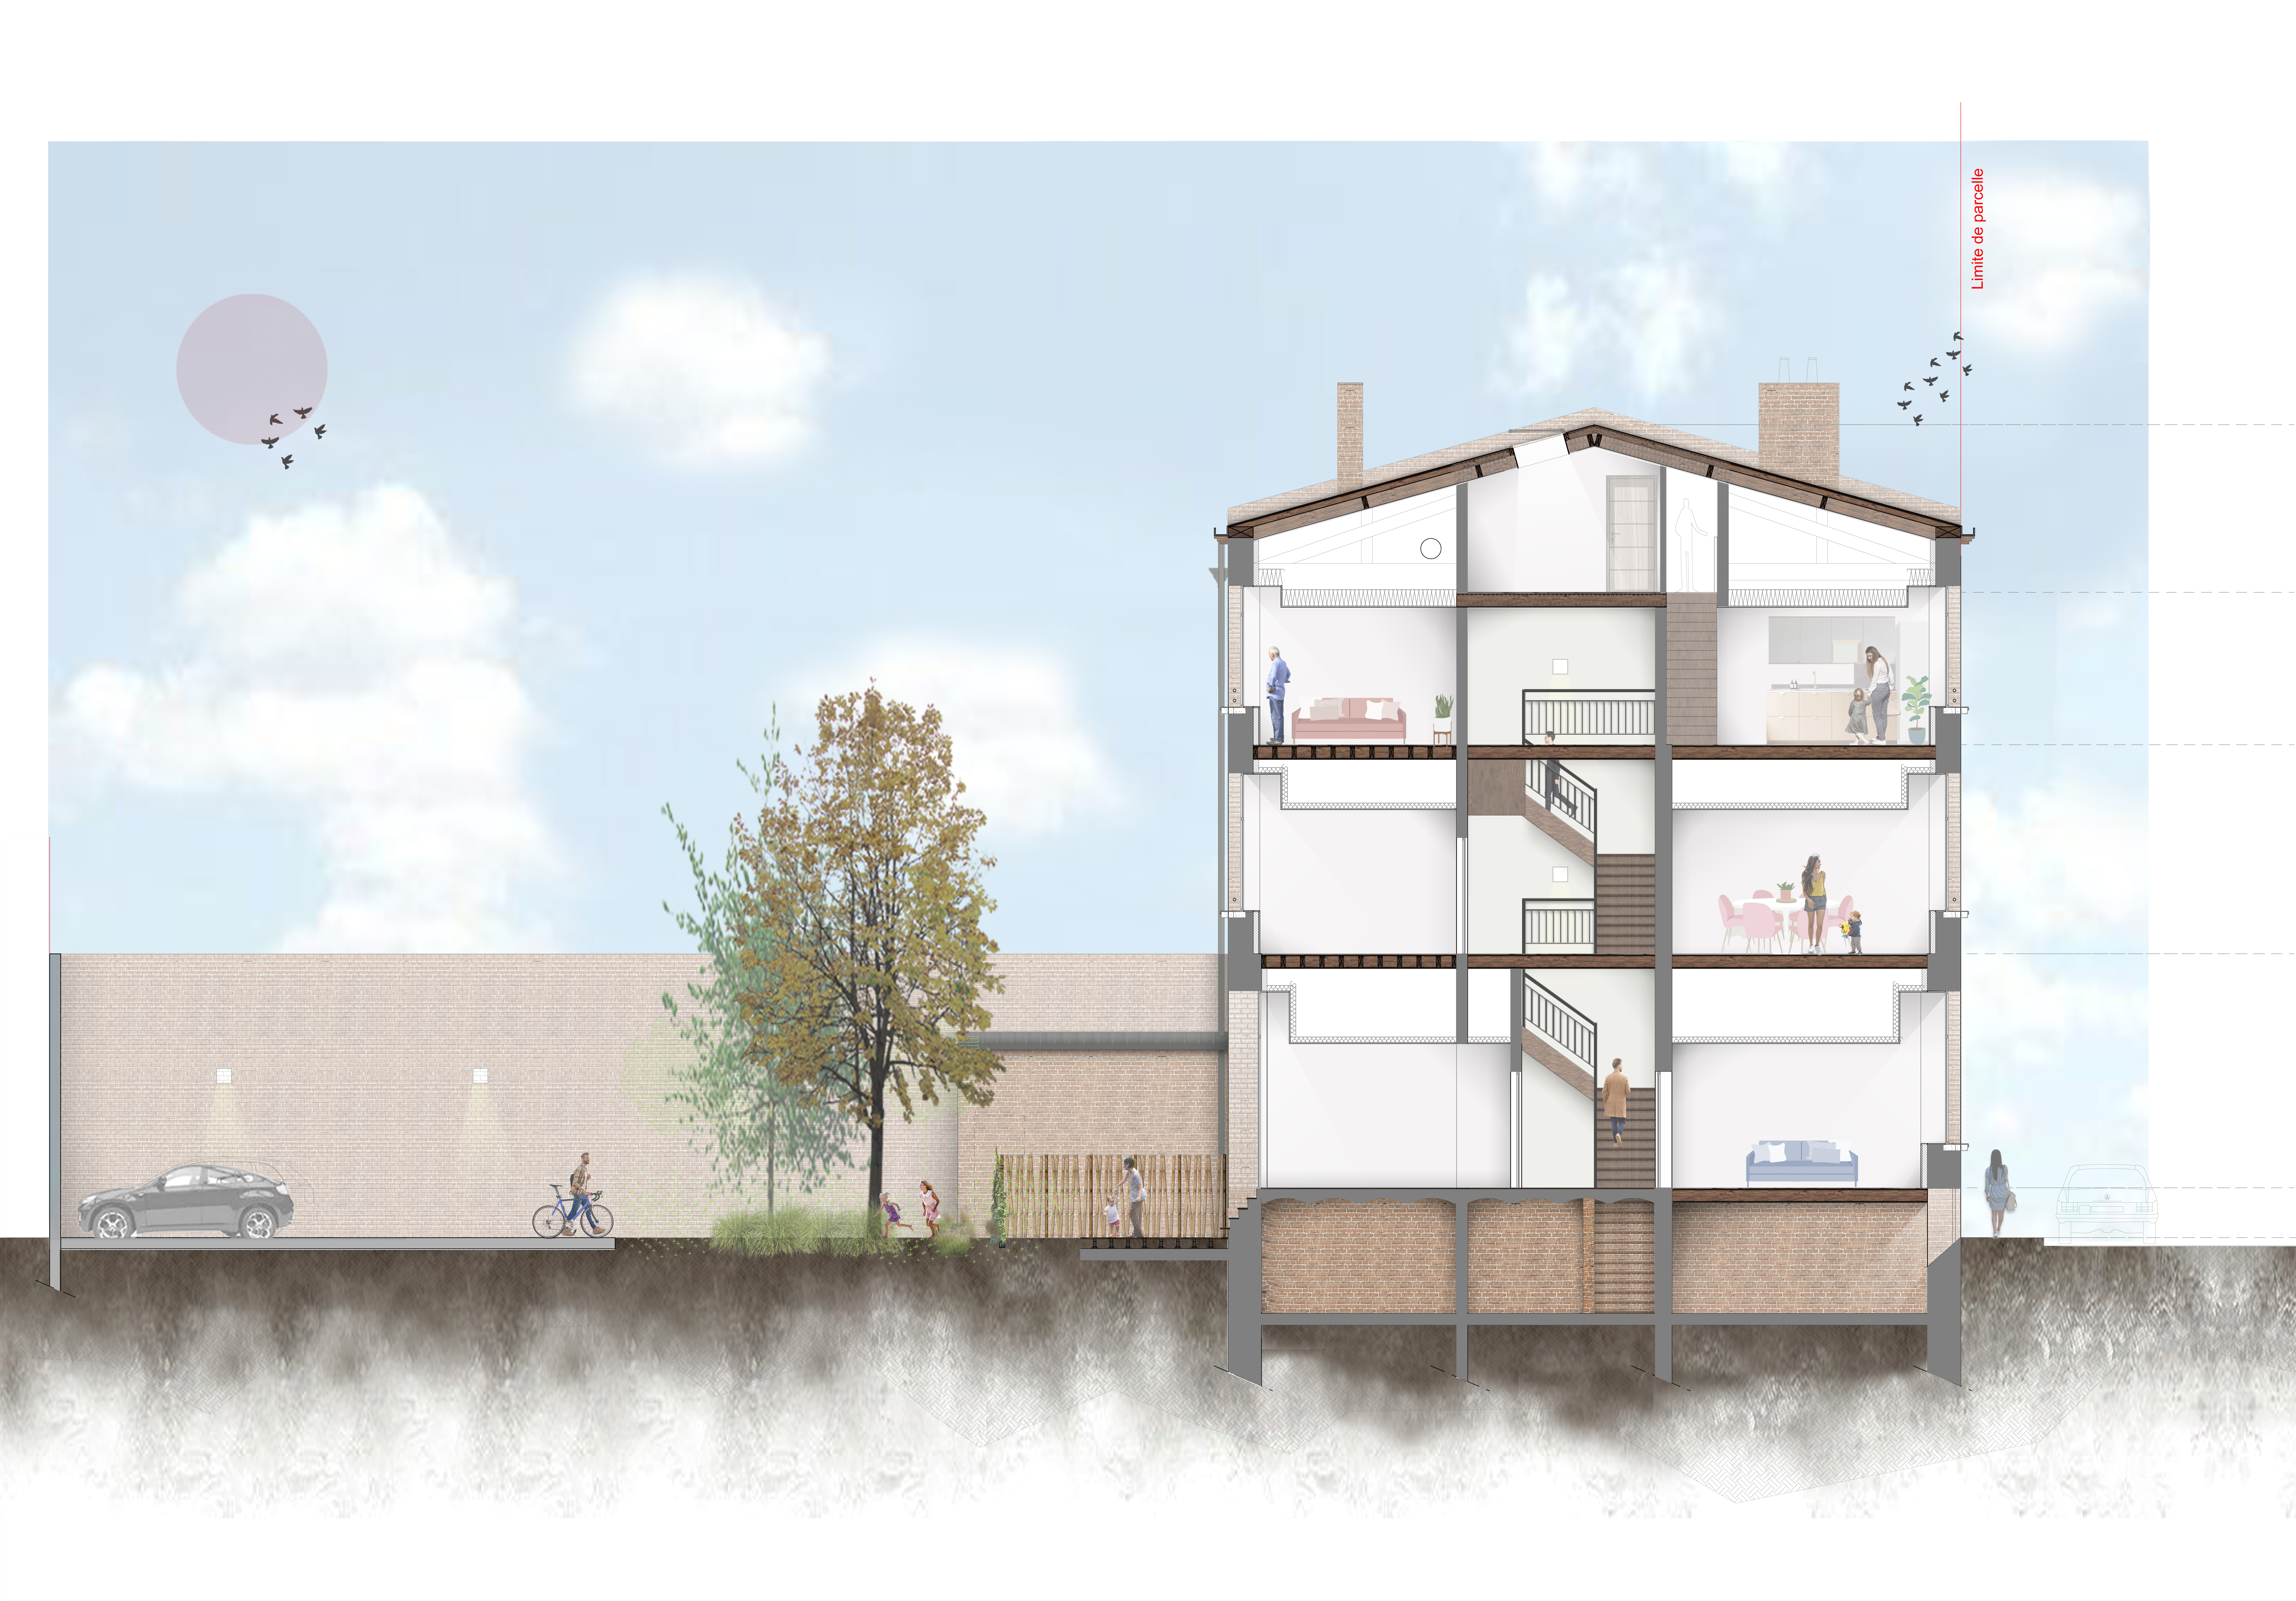 réhabilitation du Centre social ARAGO de LOOS par les architectes de Tourcoing 